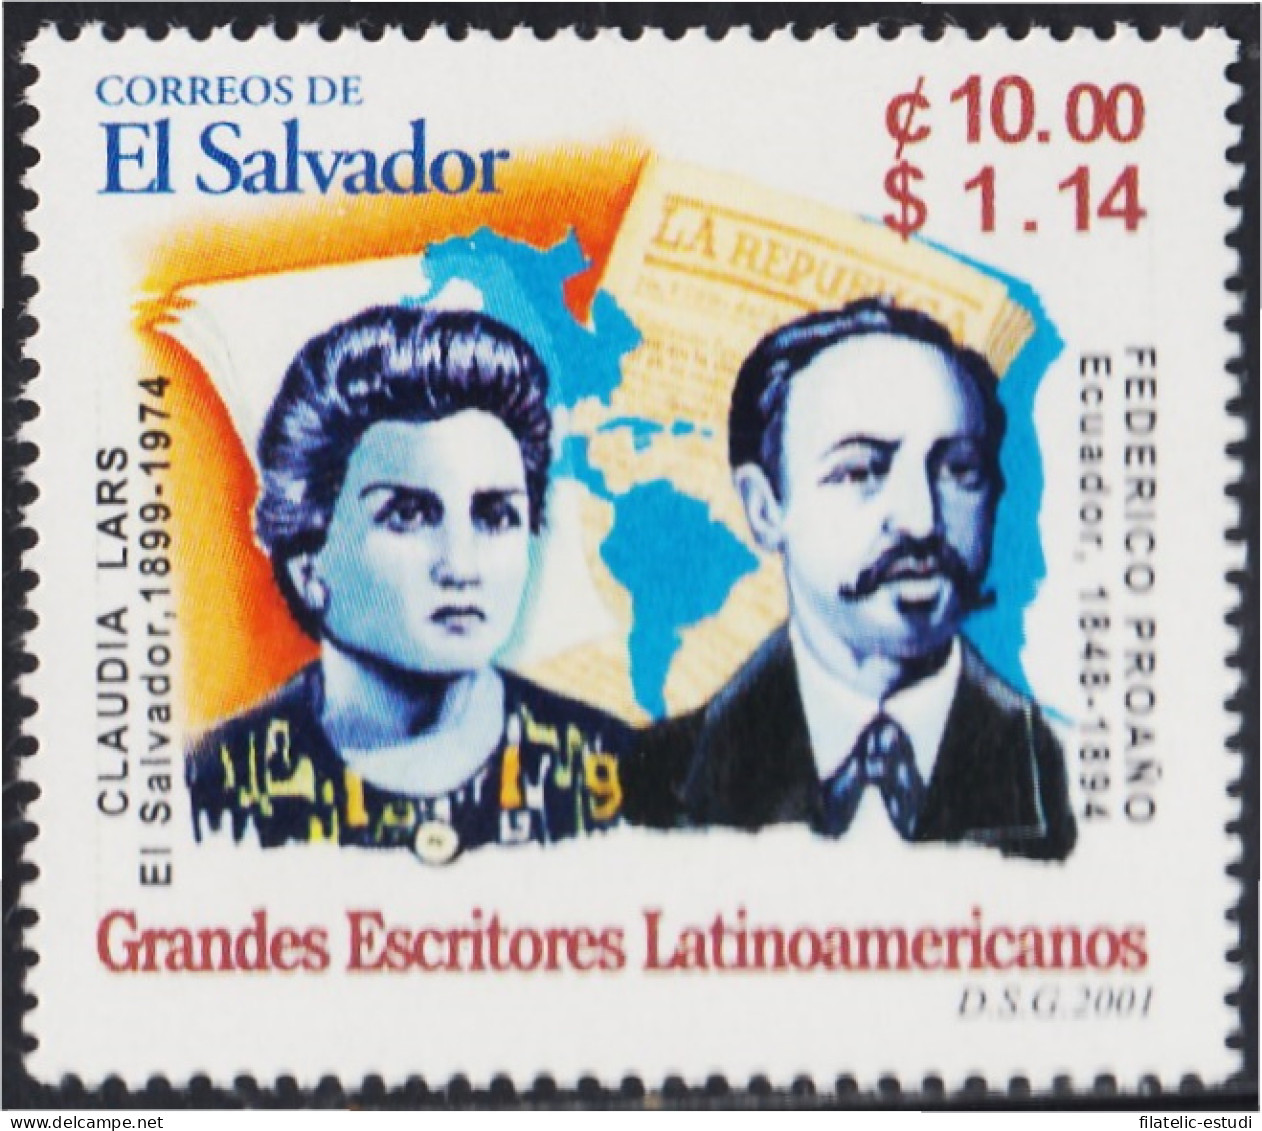 El Salvador 1488 2001 Grandes Escritores Latinoamericanos MNH - Salvador